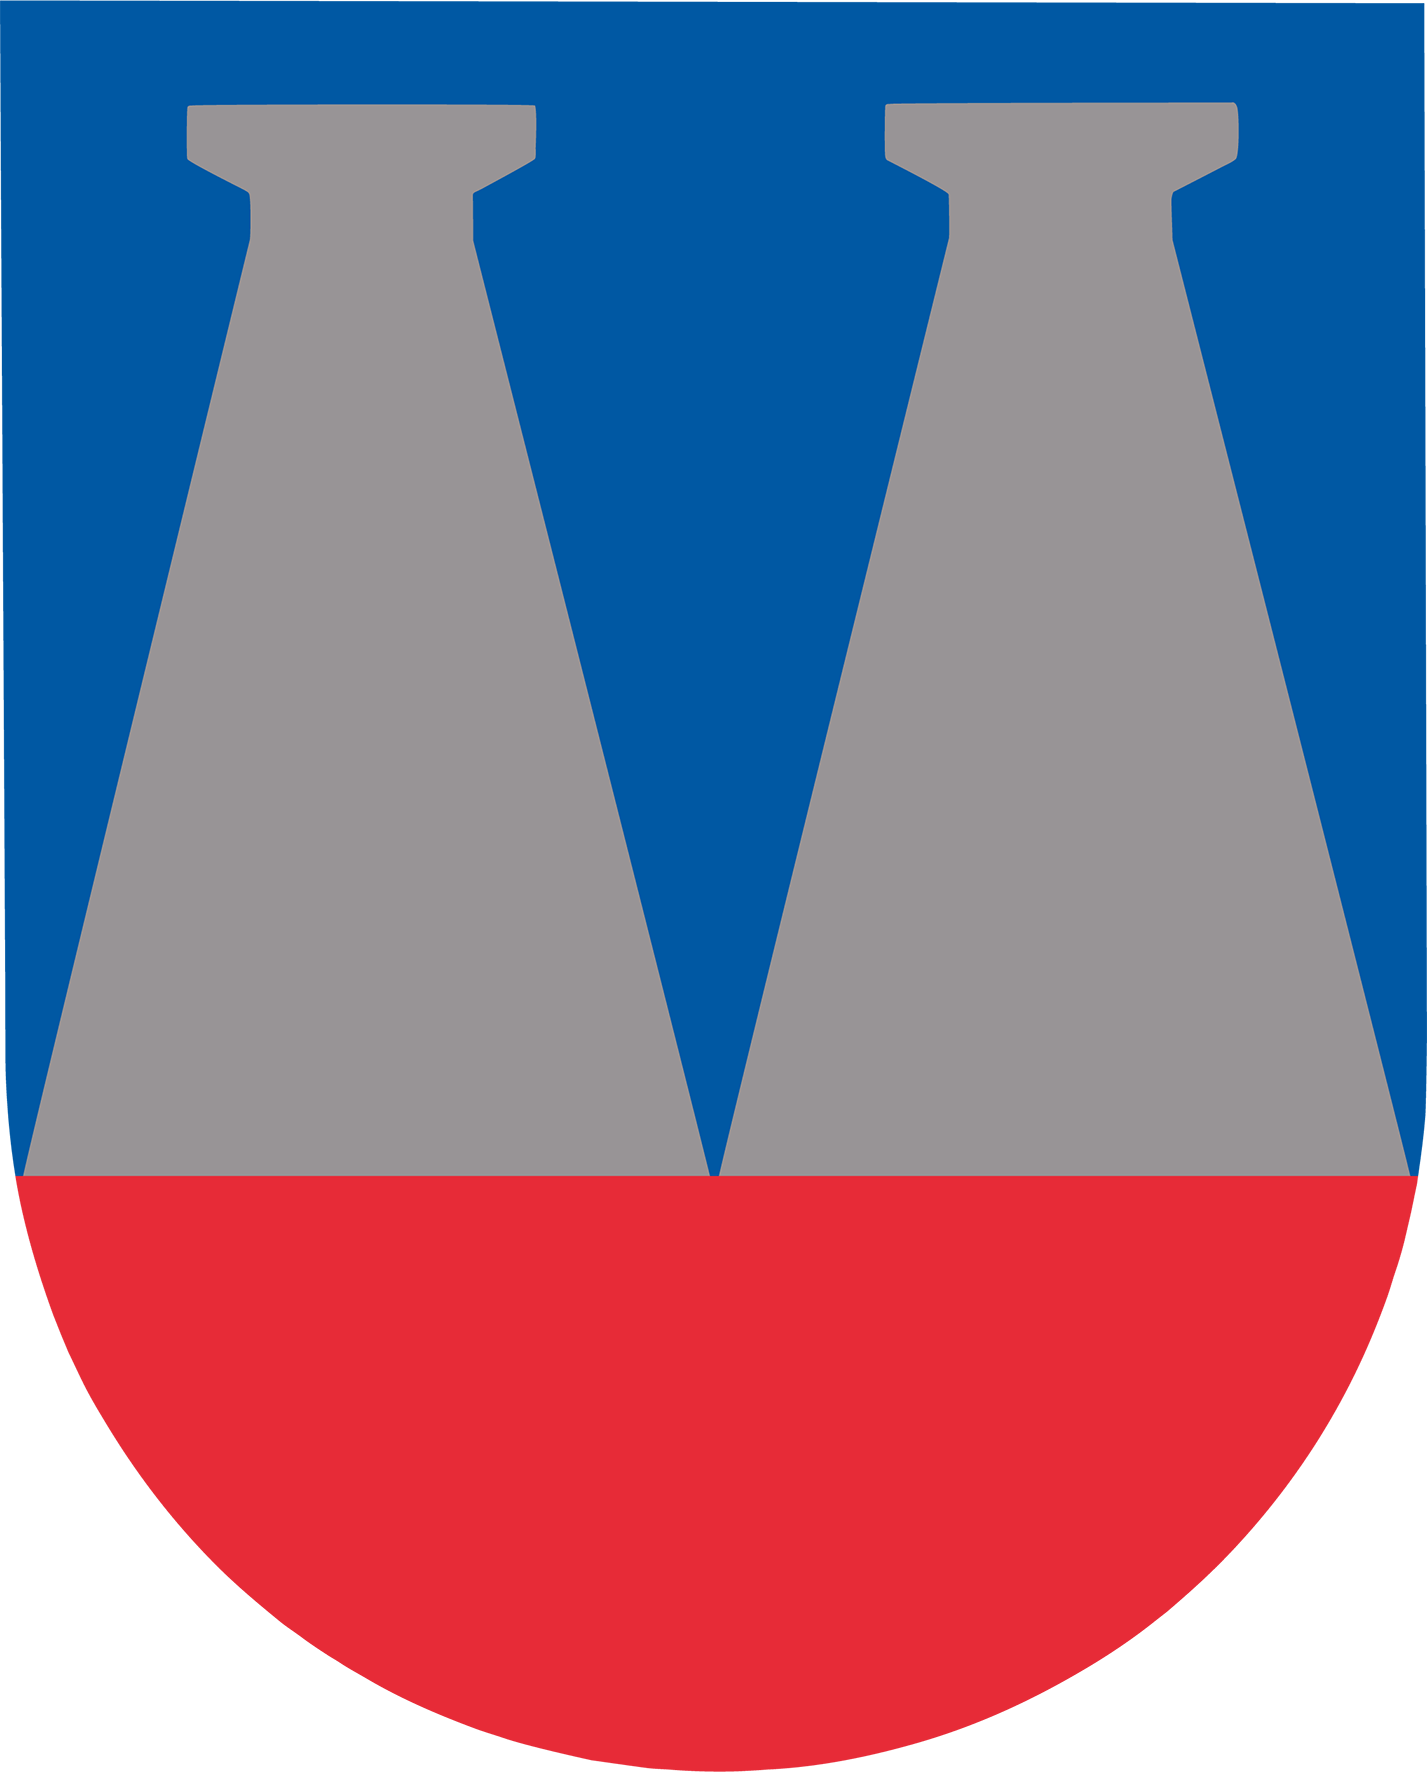 Värmdö kommuns logotyp med med angiven frizon runtom.